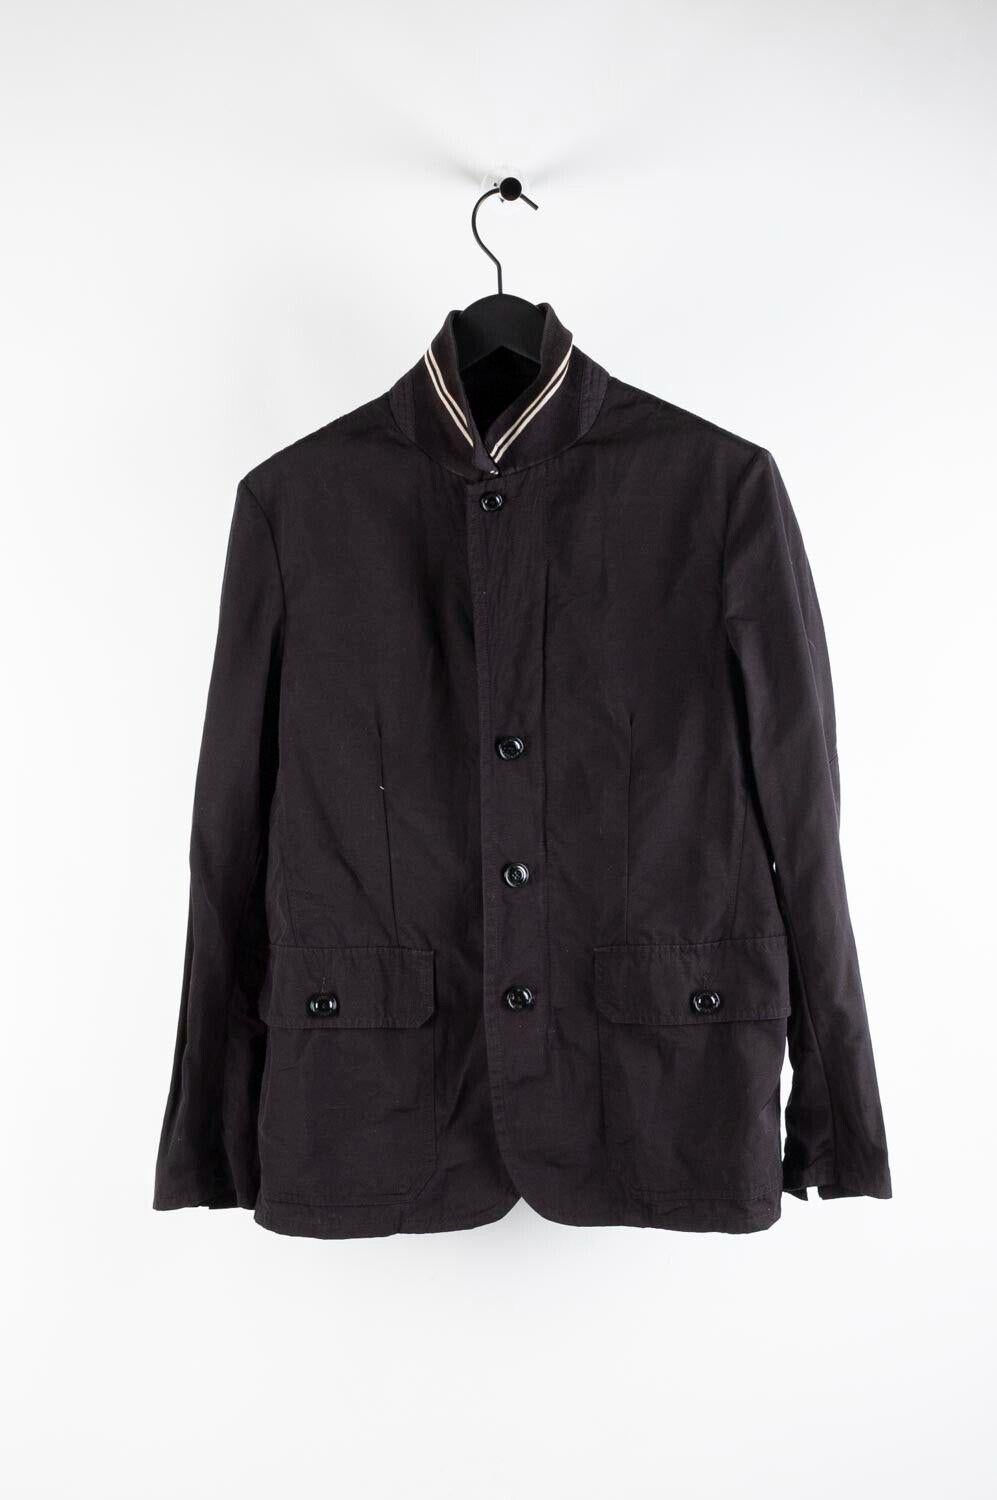 Moncler Leopold Nylon Men Packable Jacket Blazer Size 3 (M/L) S347 7